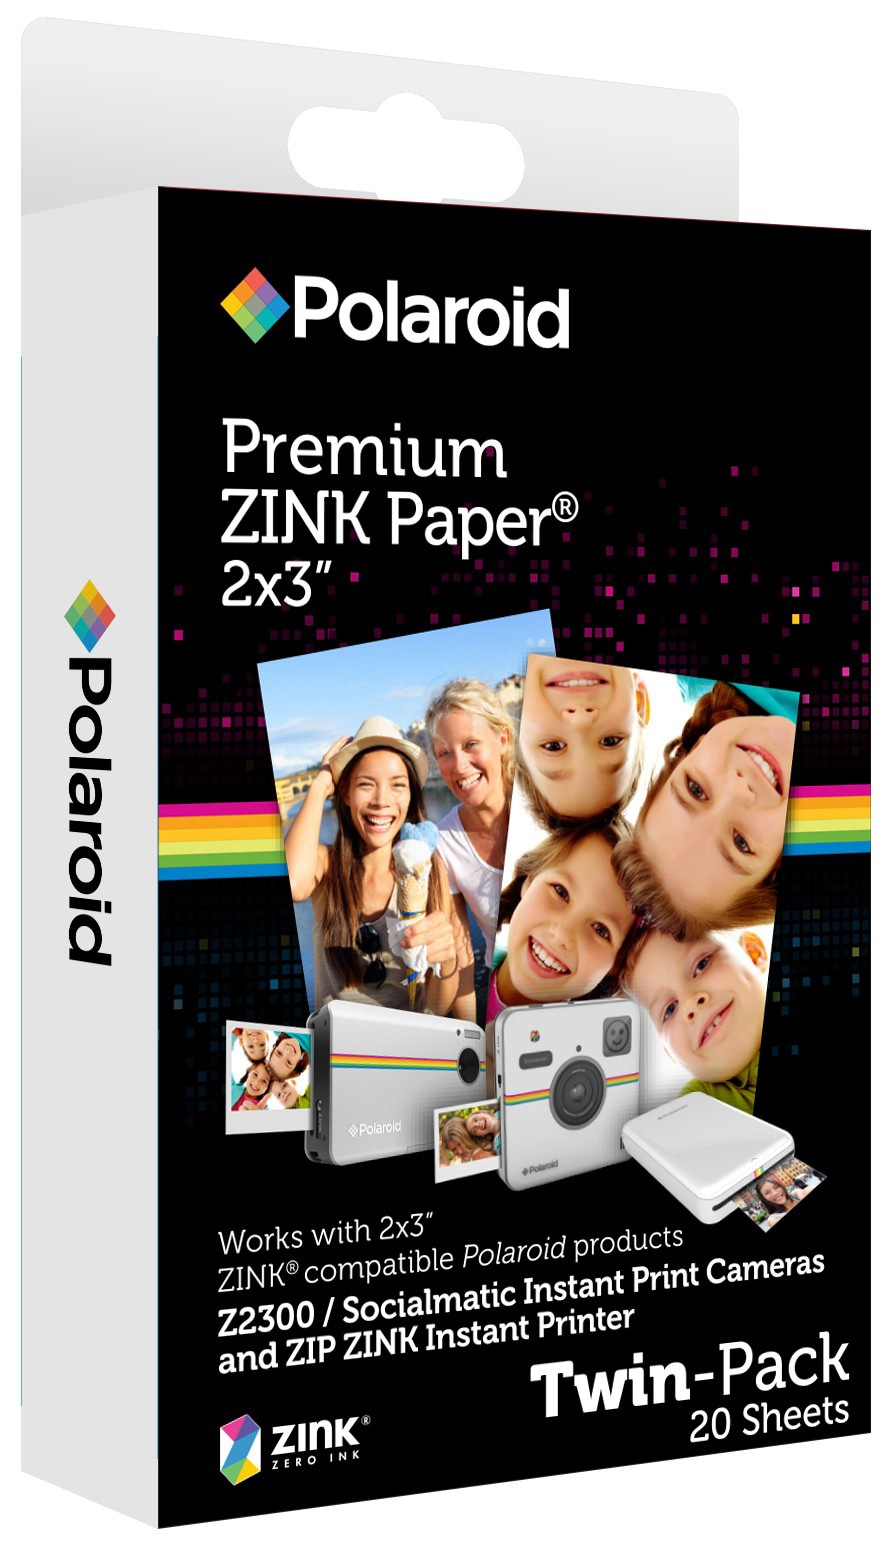 Polaroid ZINK 2x3" valokuvapaperi (tuplapakkaus) - Gigantti verkkokauppa